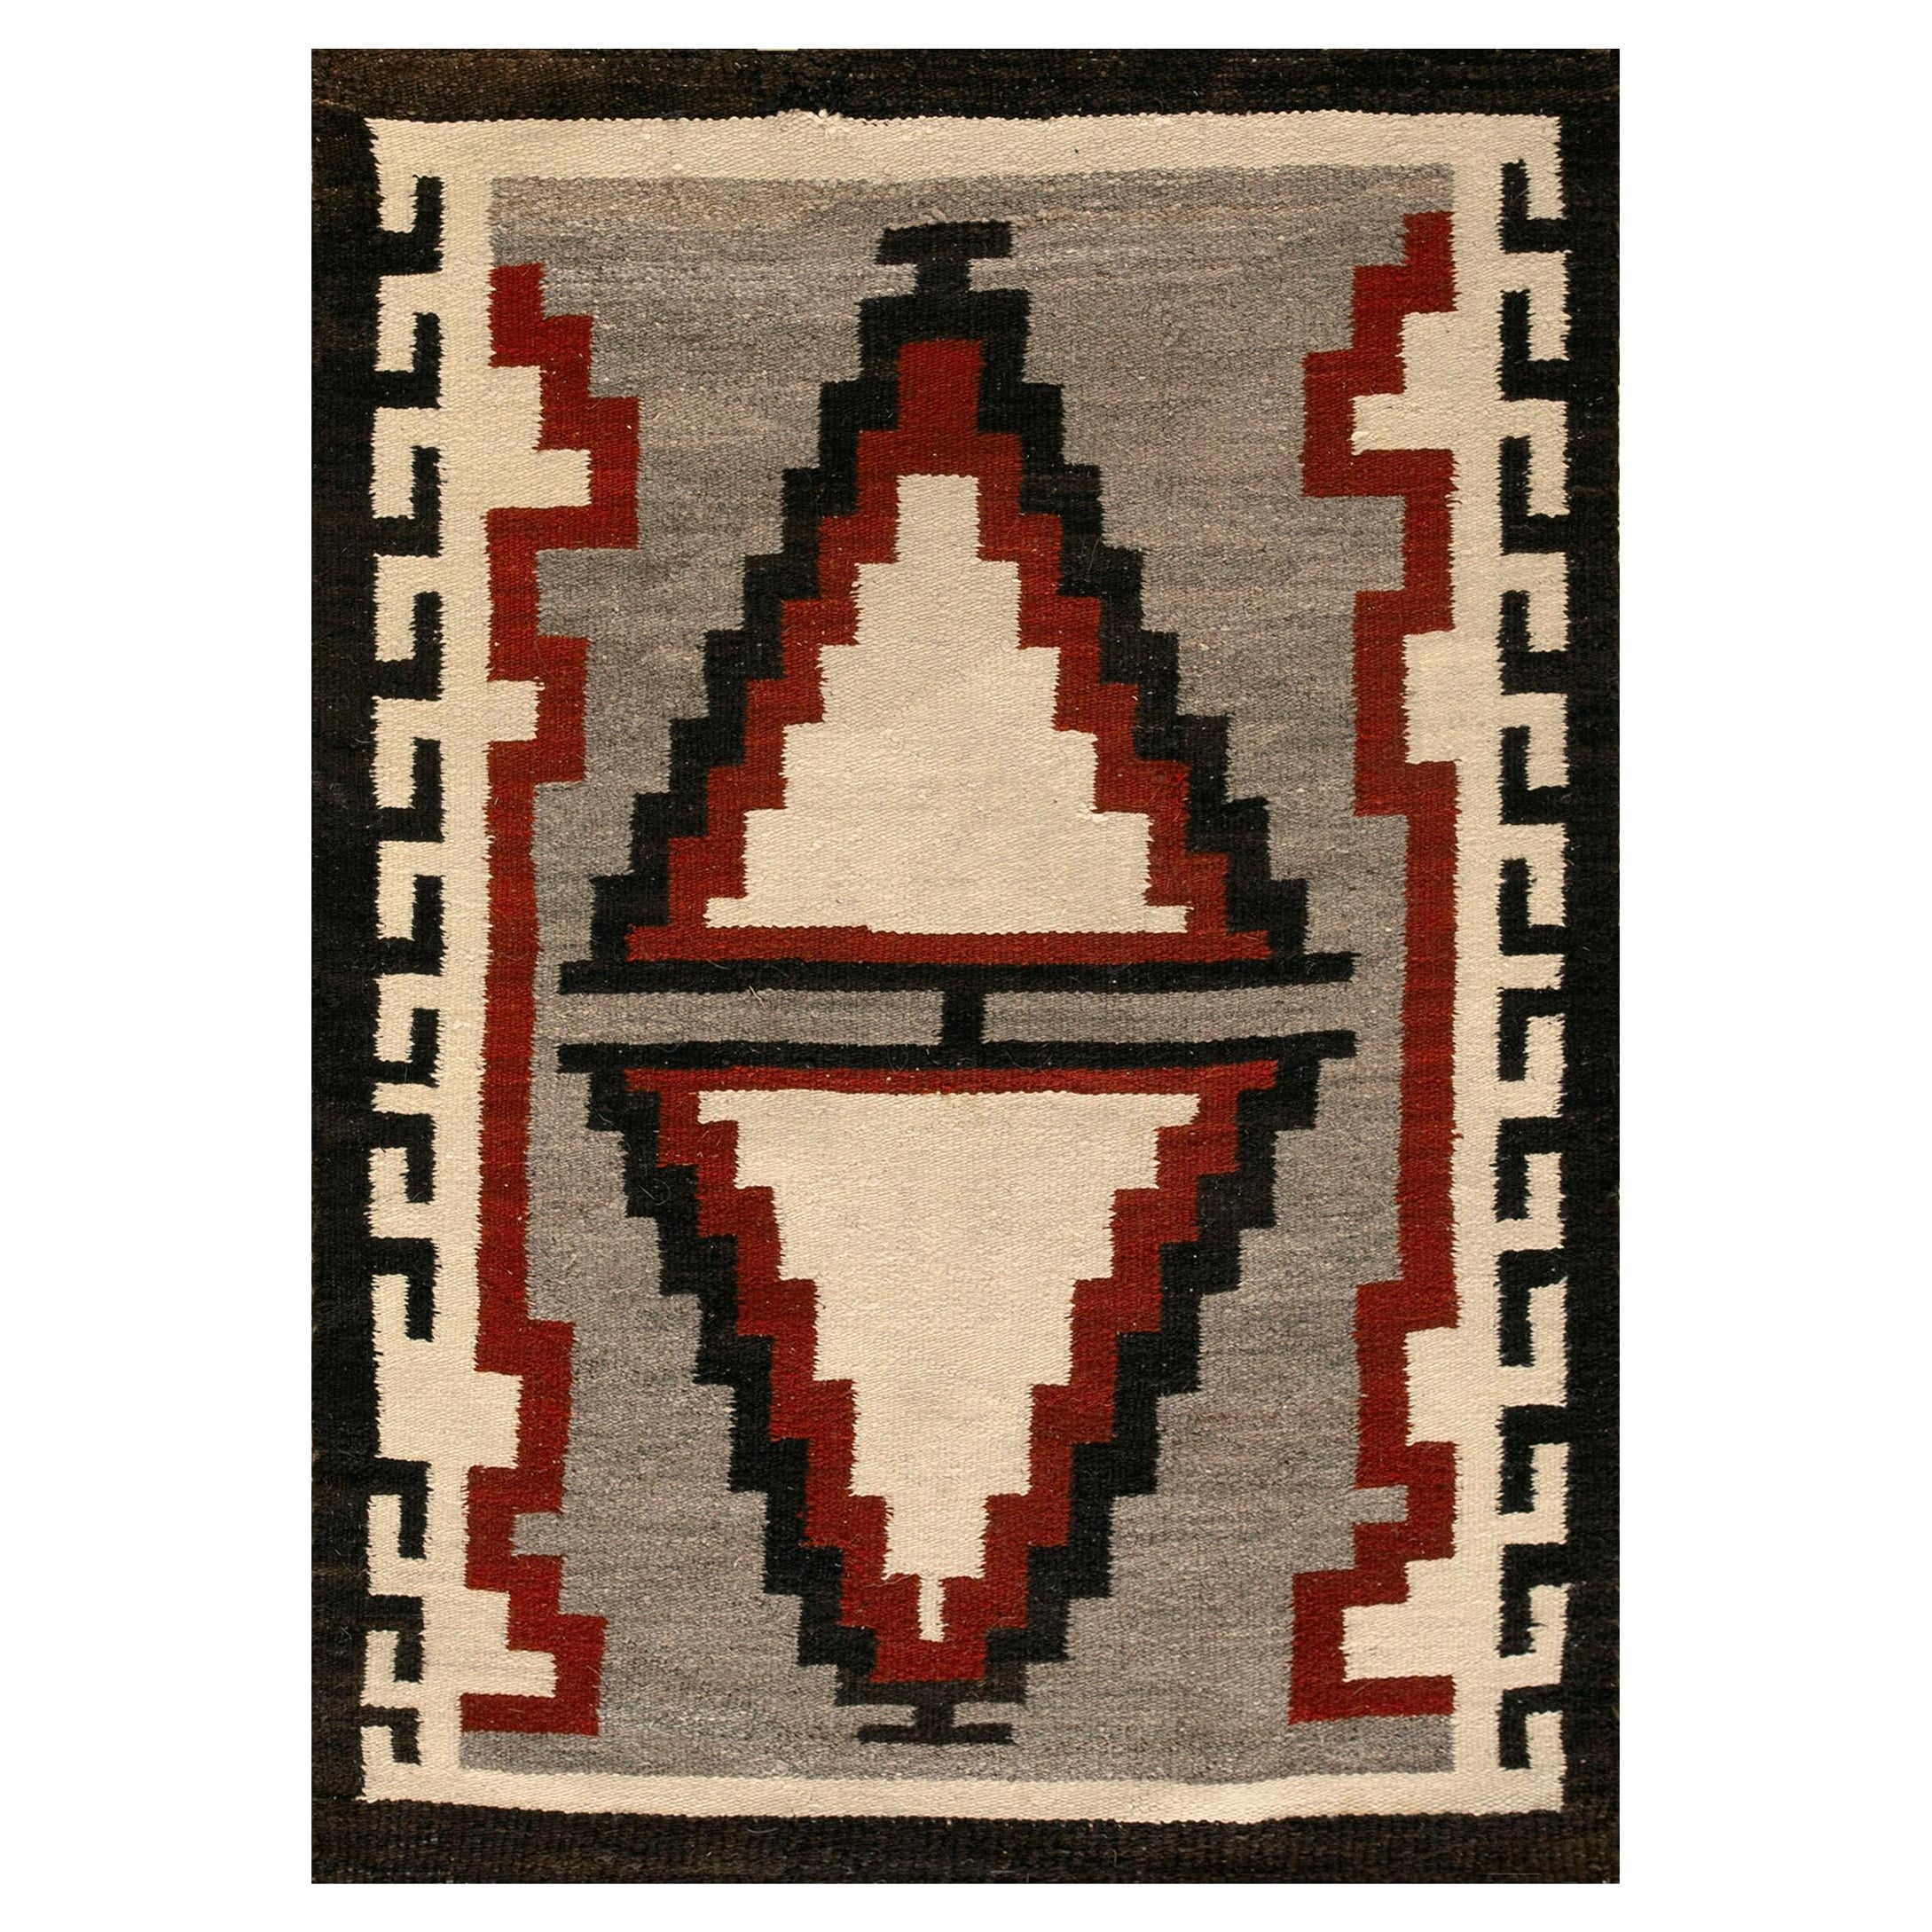 Amerikanischer Navajo-Teppich aus den 1930er Jahren (2'6" x 3'10" - 76 x 117)